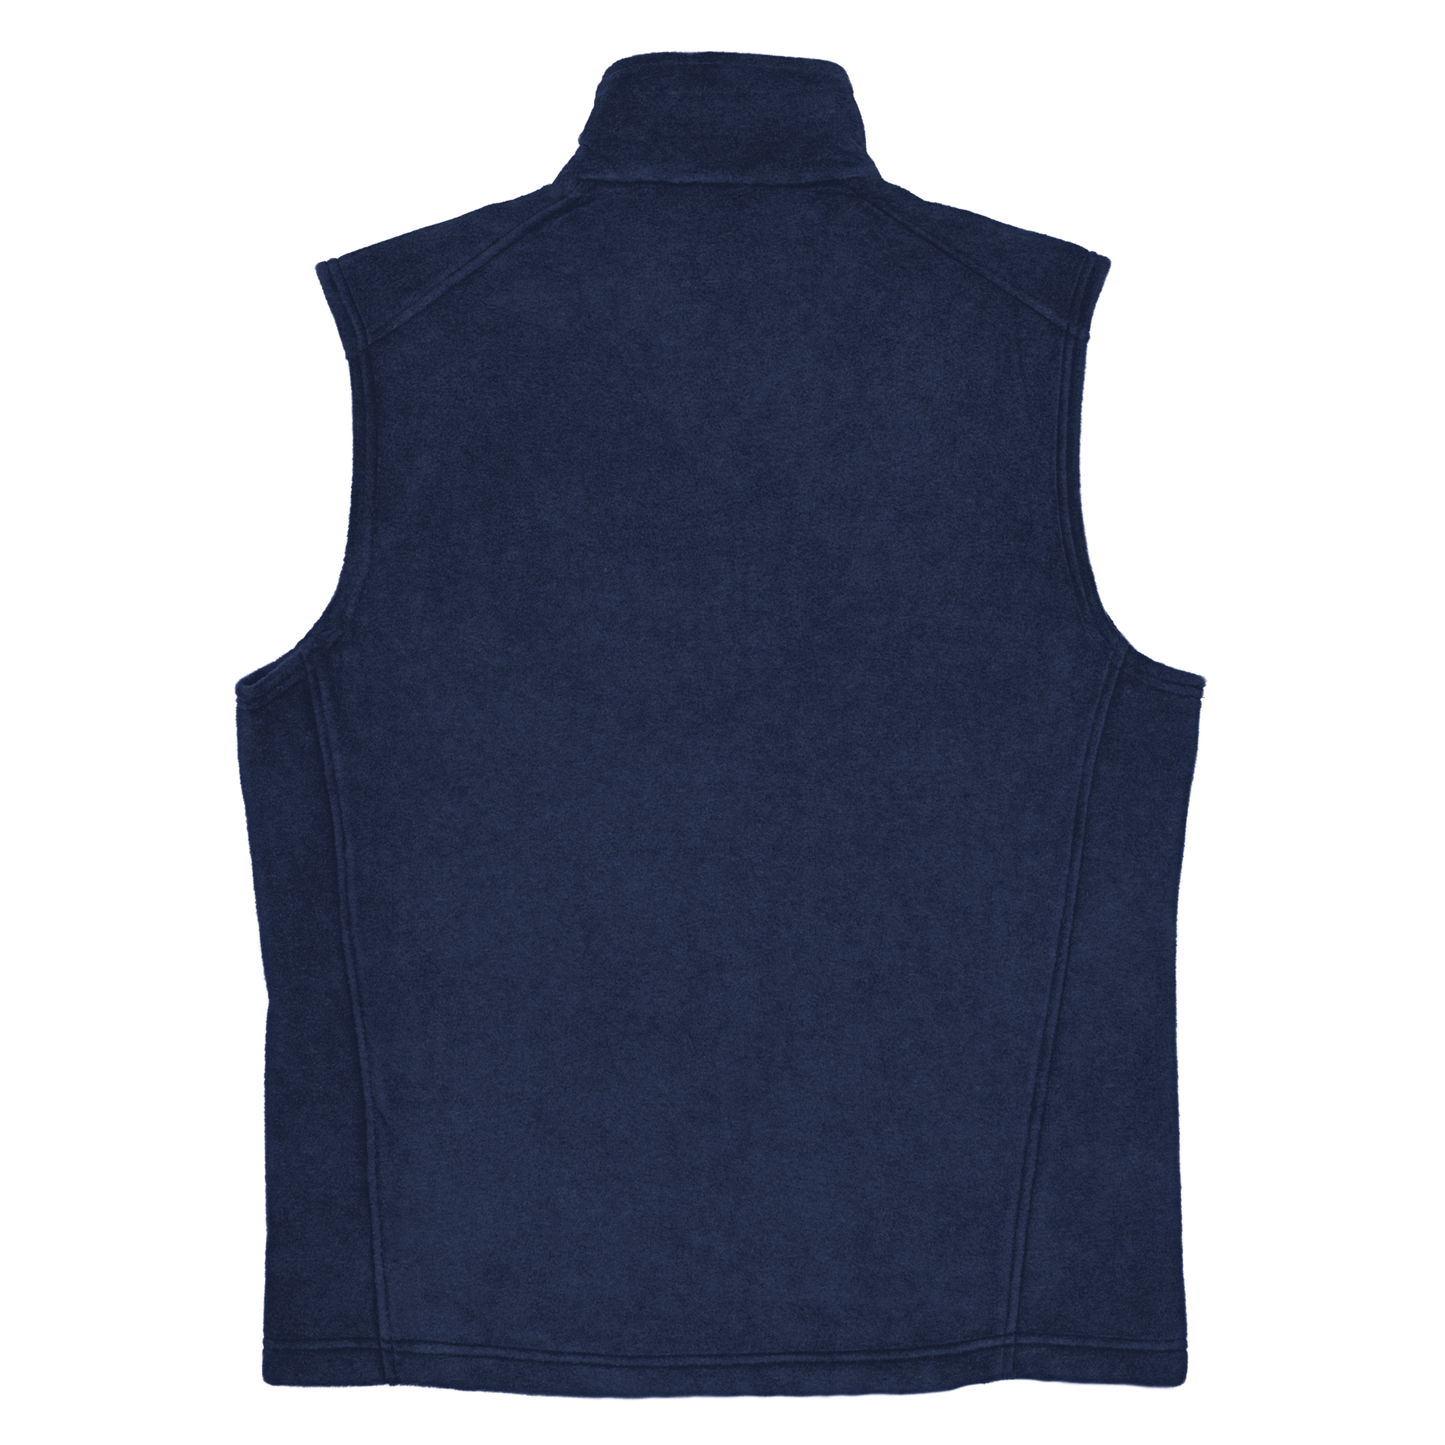 Defender 90 - Columbia fleece vest